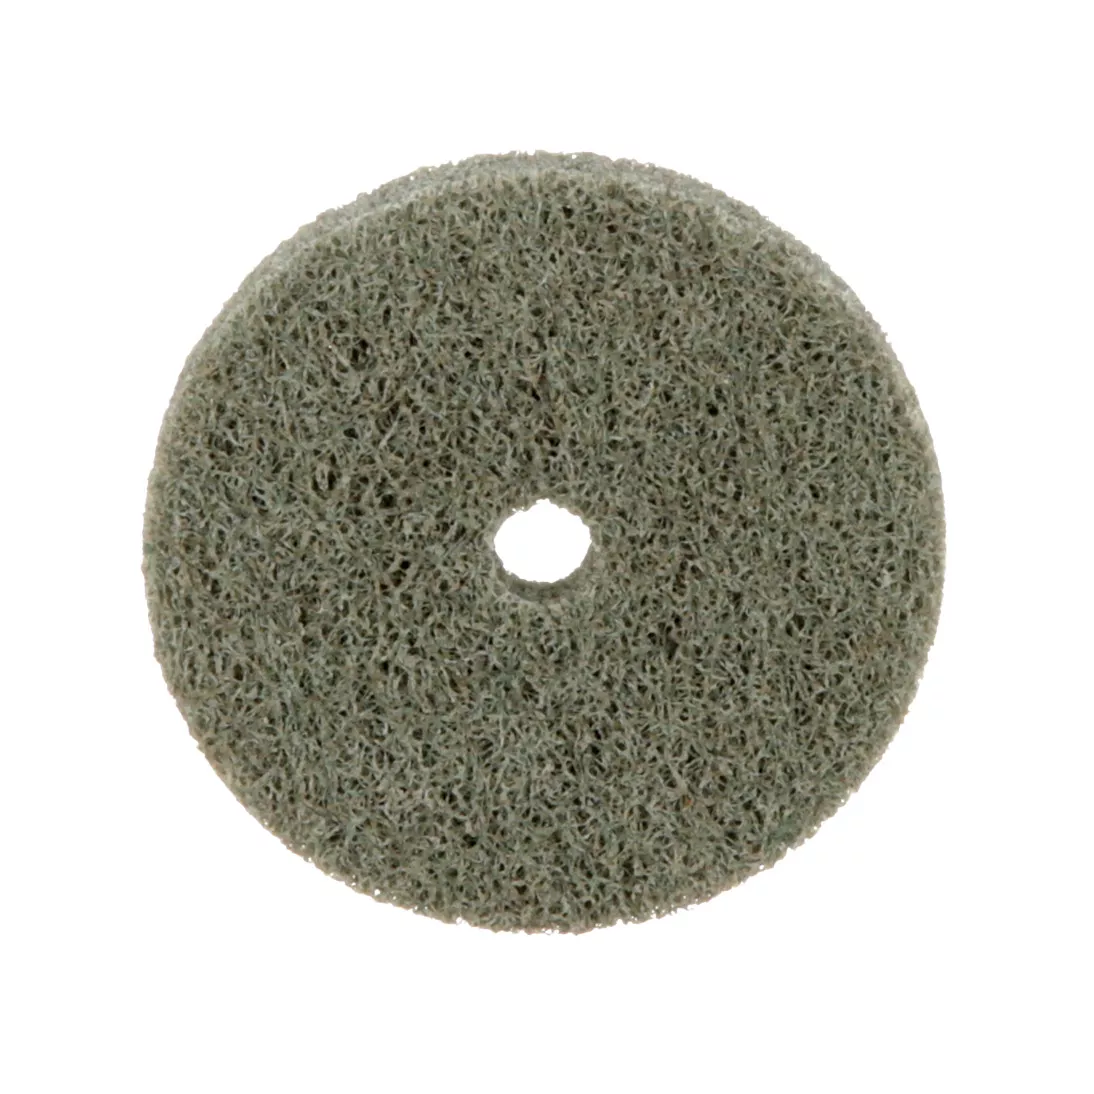 Standard Abrasives™ A/O Unitized Wheel 852110, 521 2 in x 1/4 in x 1/4
in, 10 ea/Case